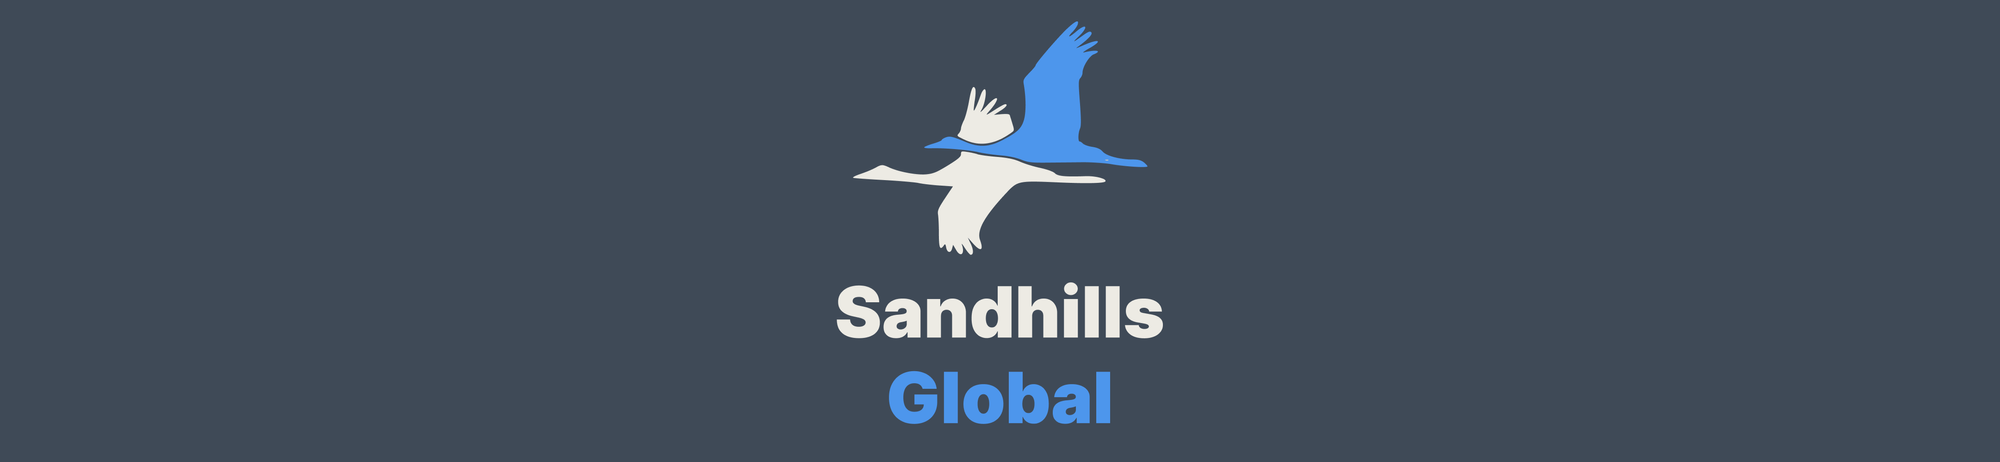 Software Developer - Sandhills Global